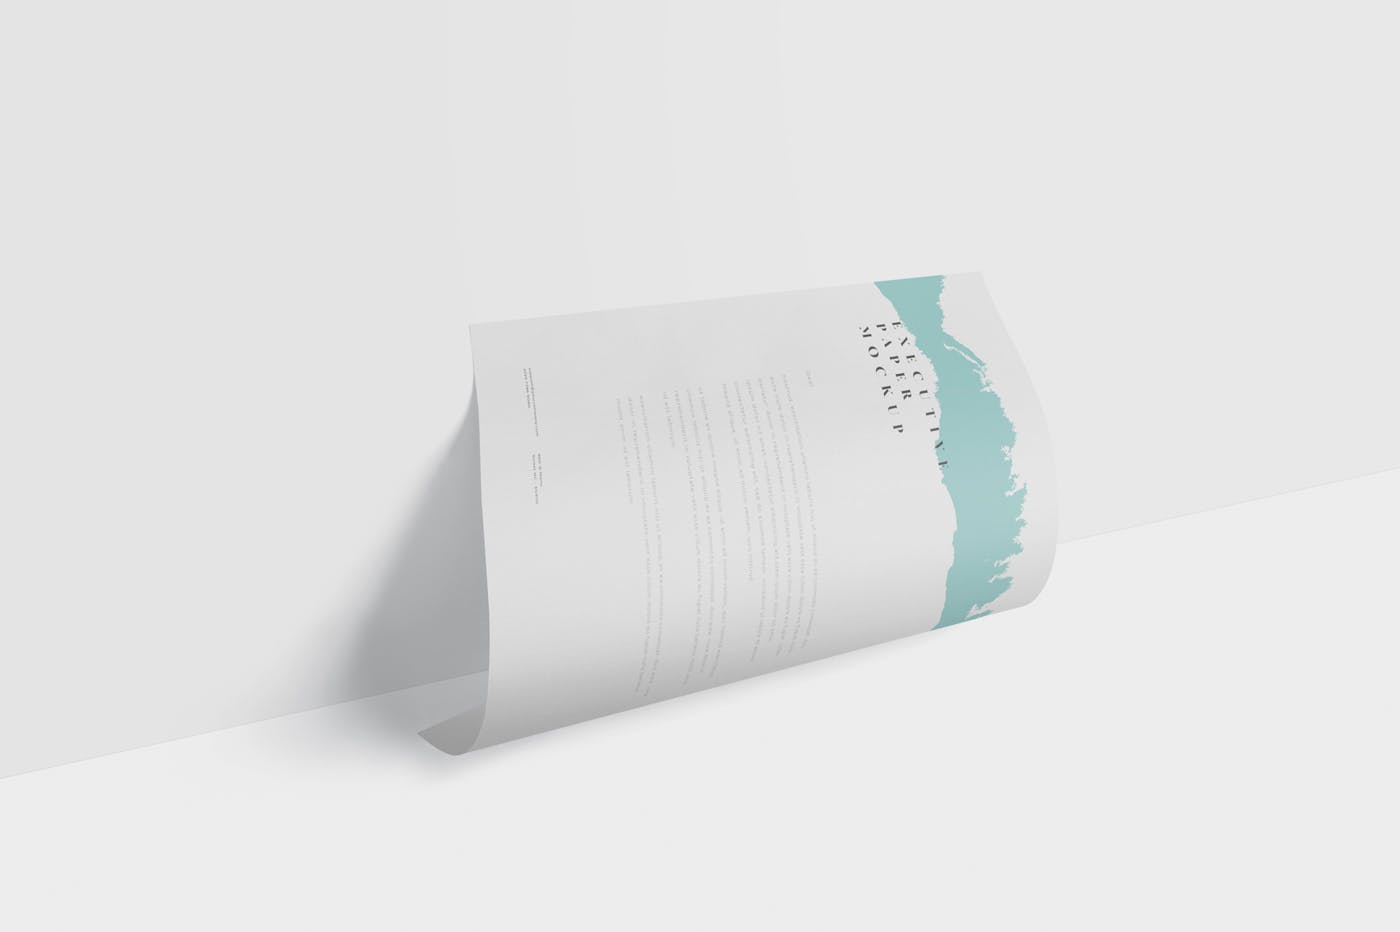 企业宣传单张设计效果图样机第一素材精选 Executive Paper Mockup – 7×10 Inch Size插图(4)